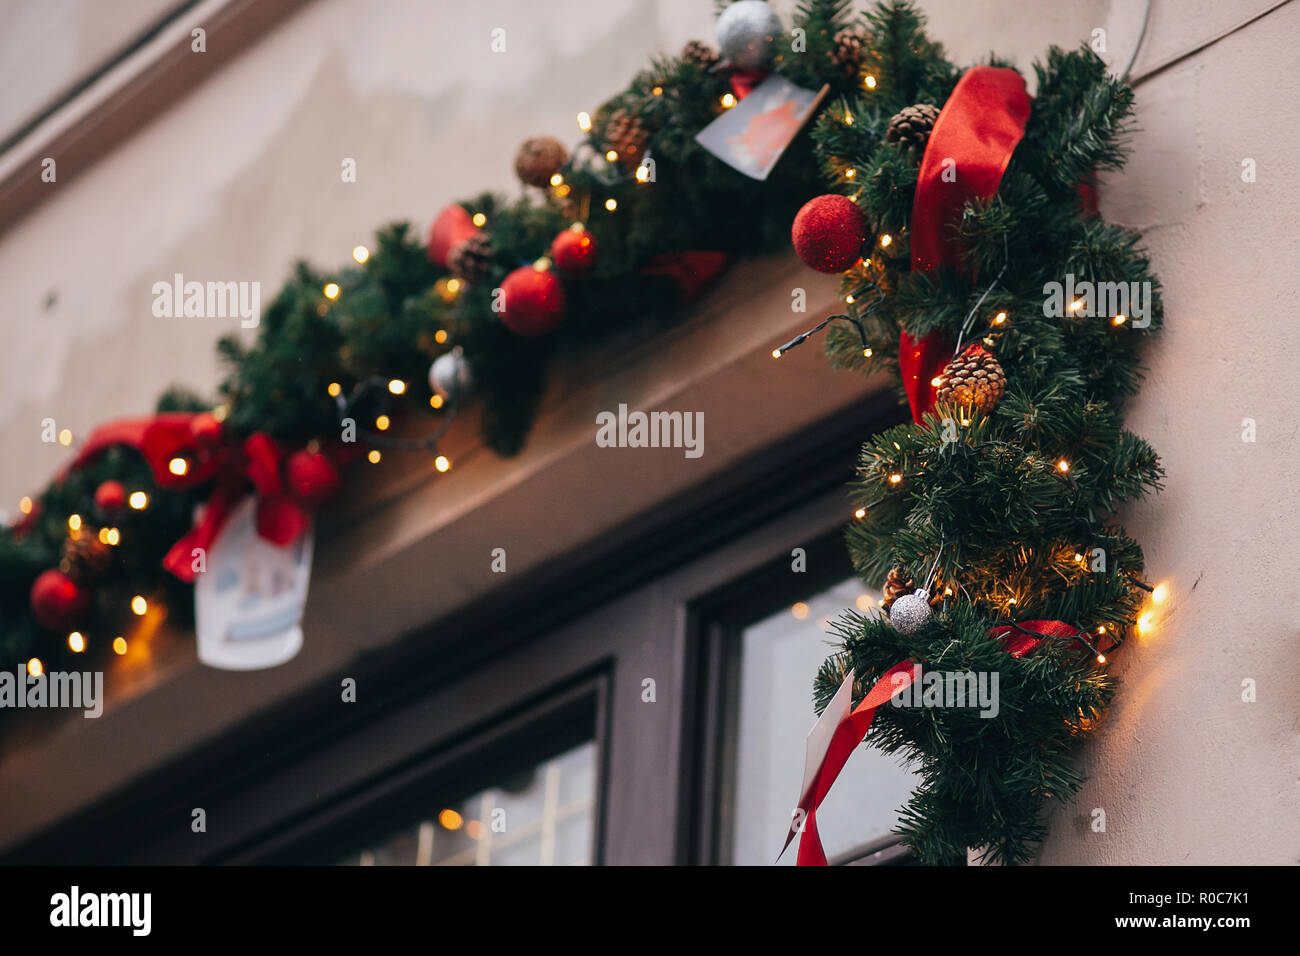 de múltiples fines borde Tranquilidad Elegante decoración de navidad, guirnaldas y luces de ramas de abeto con  adornos de color rojo en la ventana en la unión de las calles de la ciudad.  Iluminación y decoración festiva